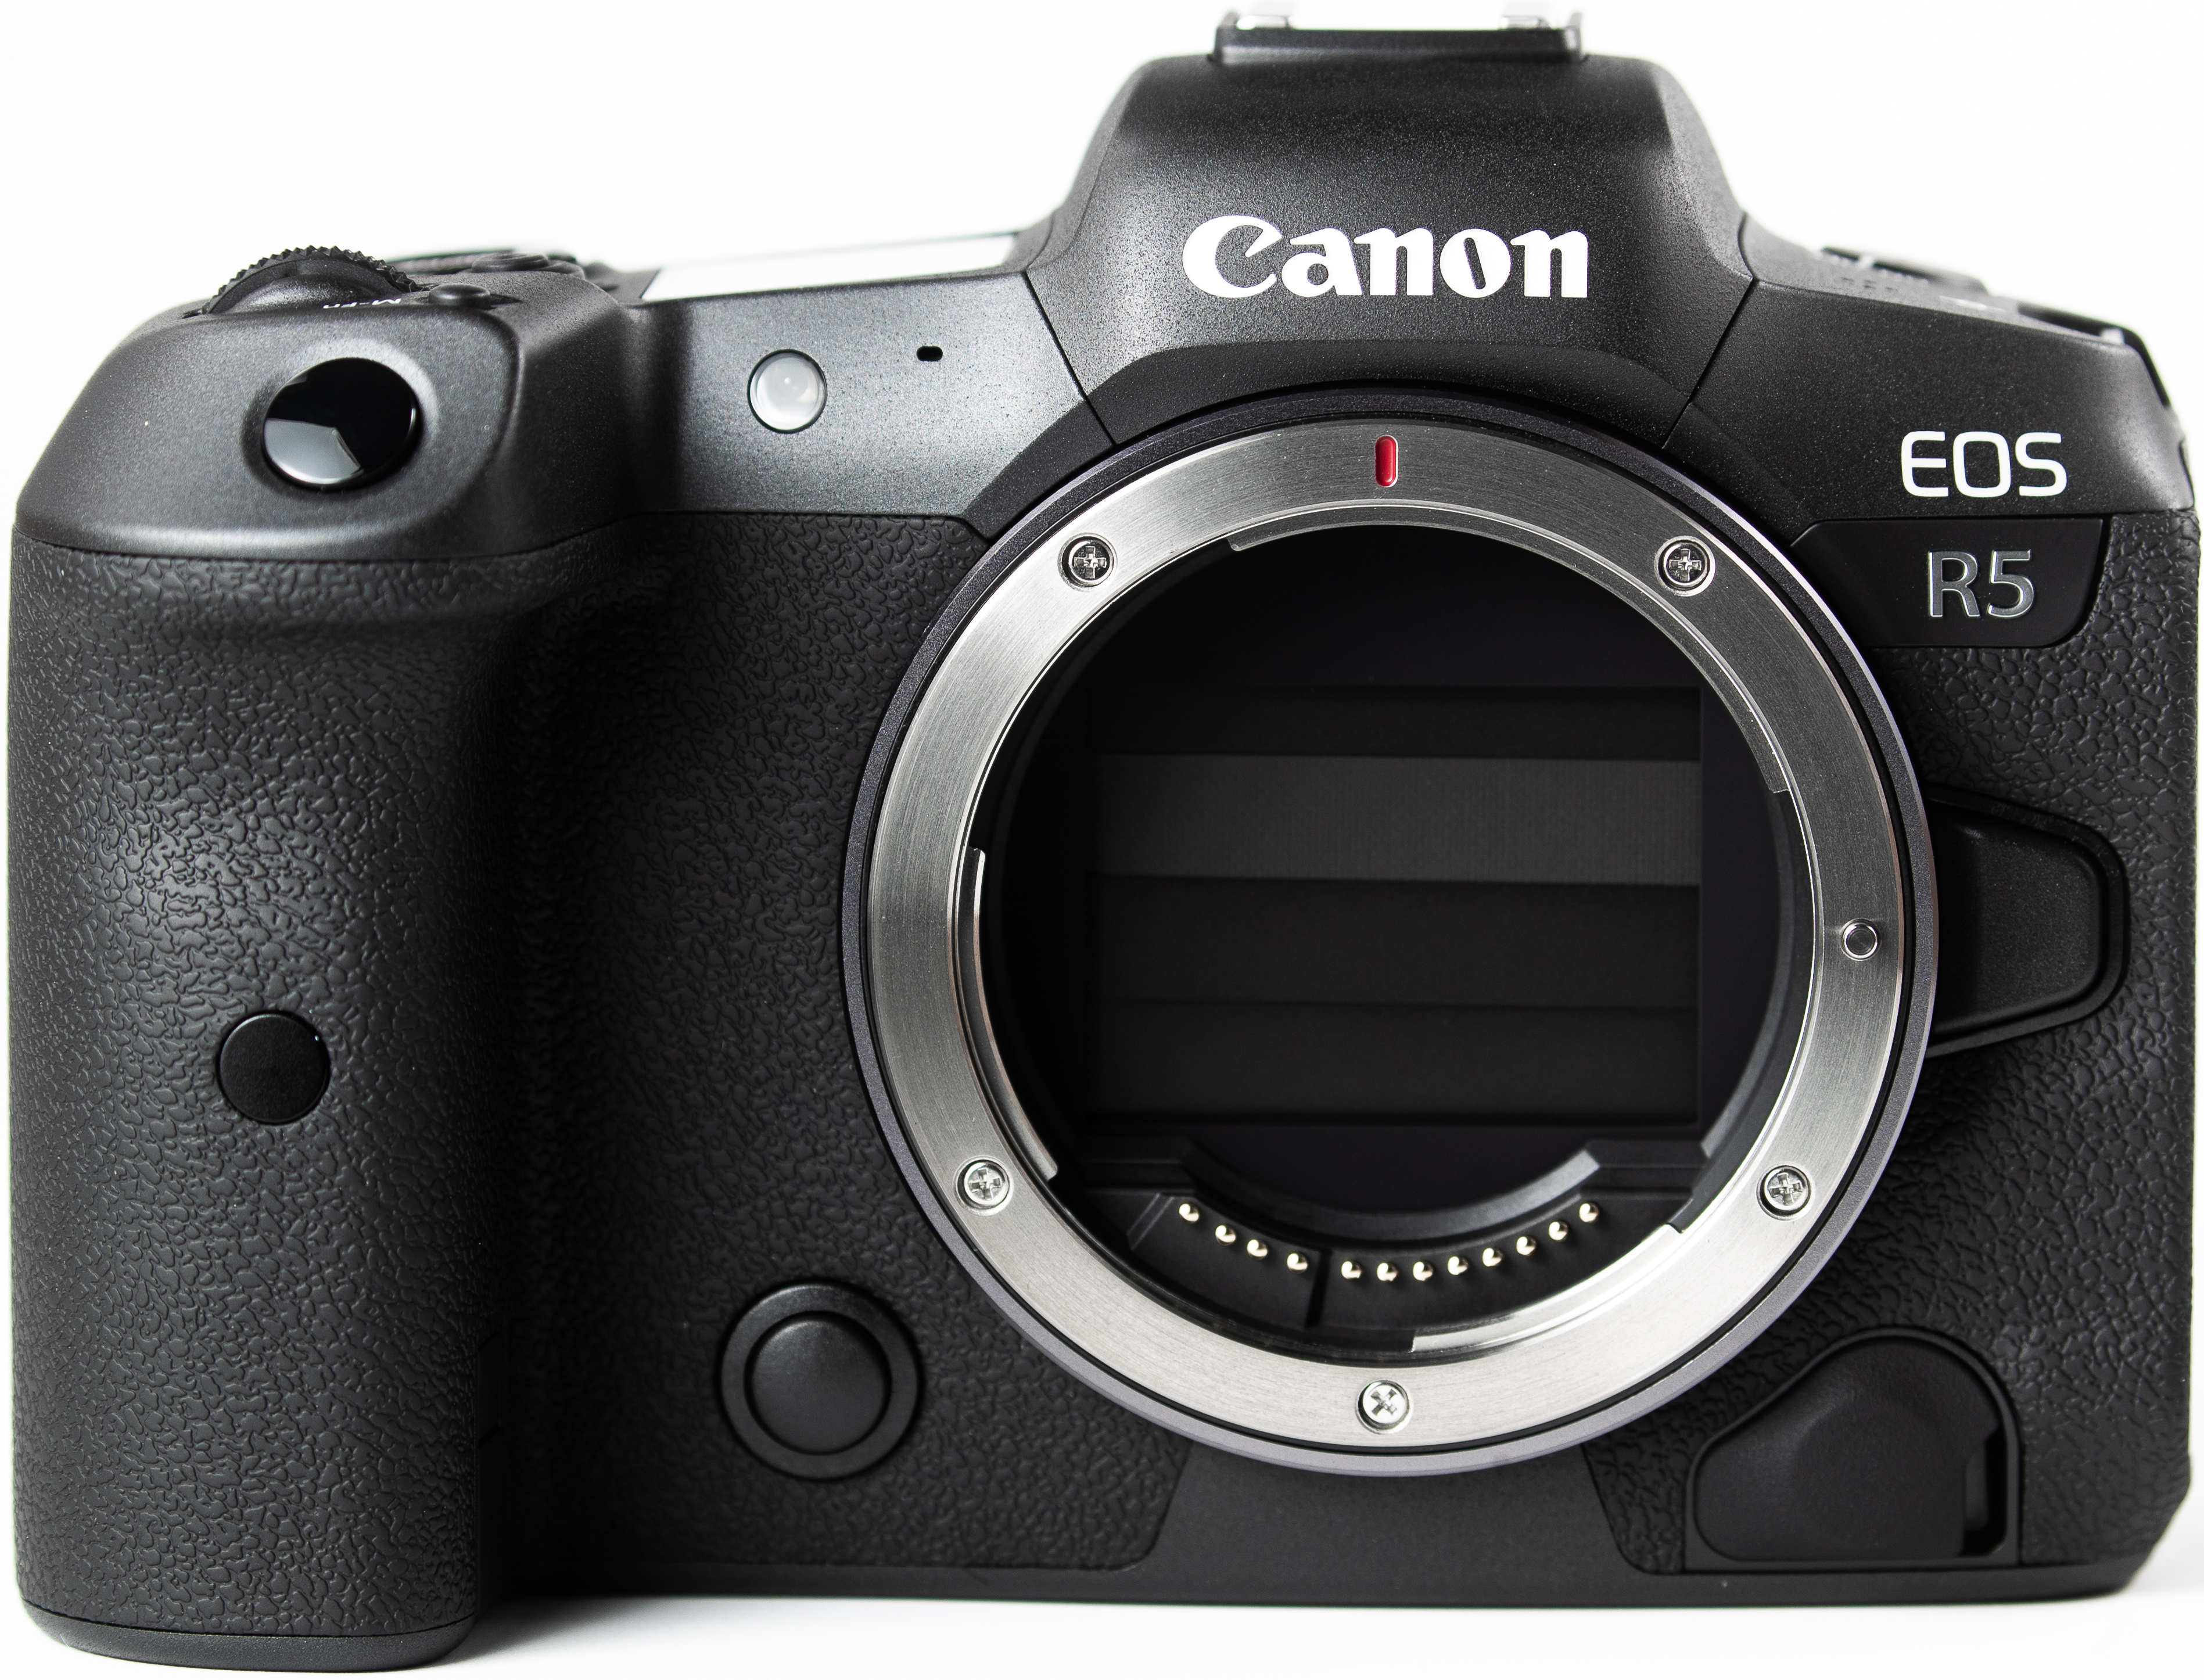 Canon EOS R5 - Wikipedia